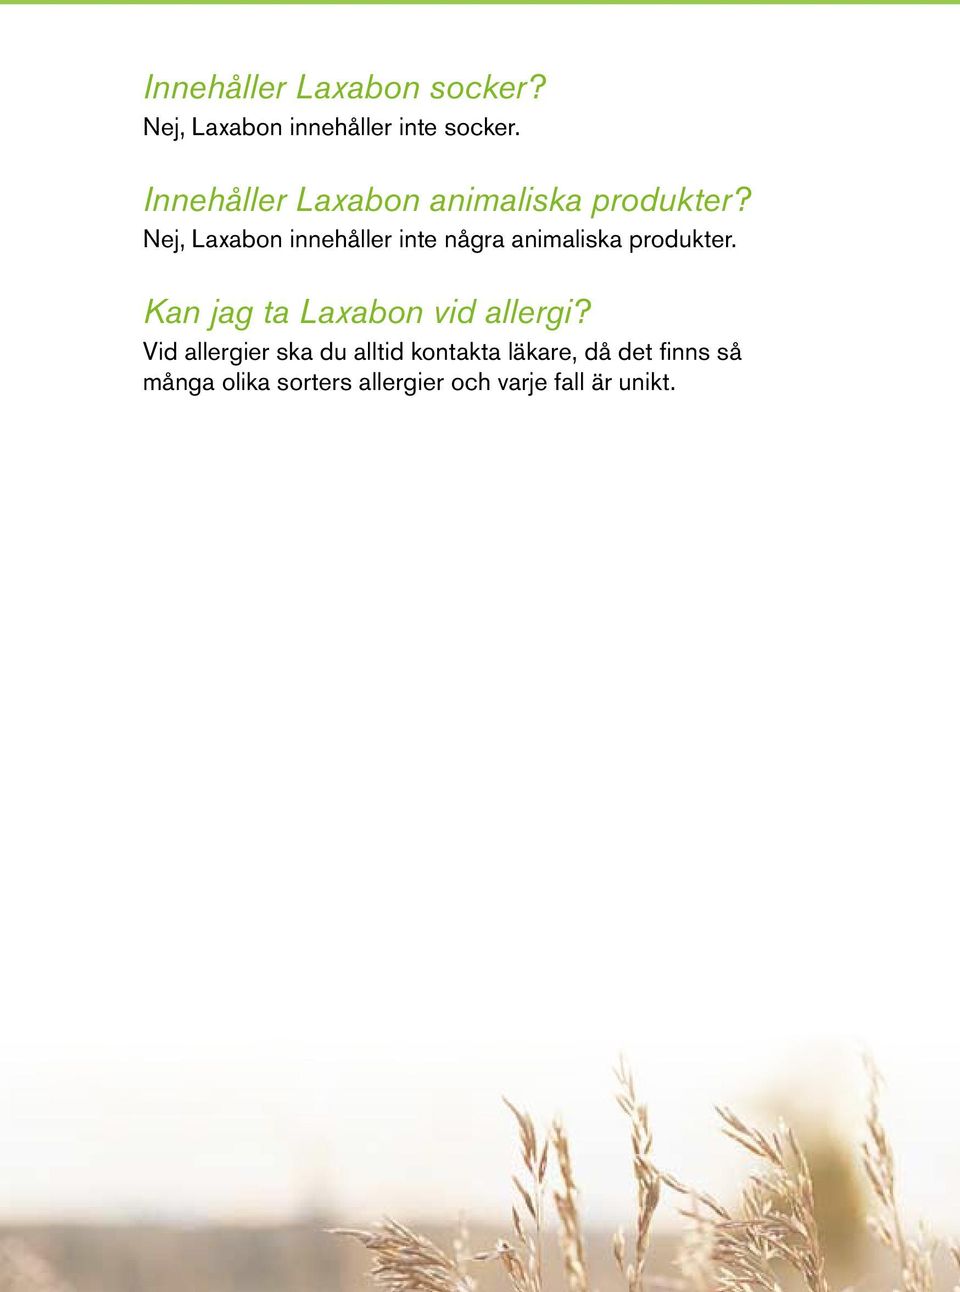 Nej, Laxabon innehåller inte några animaliska produkter.